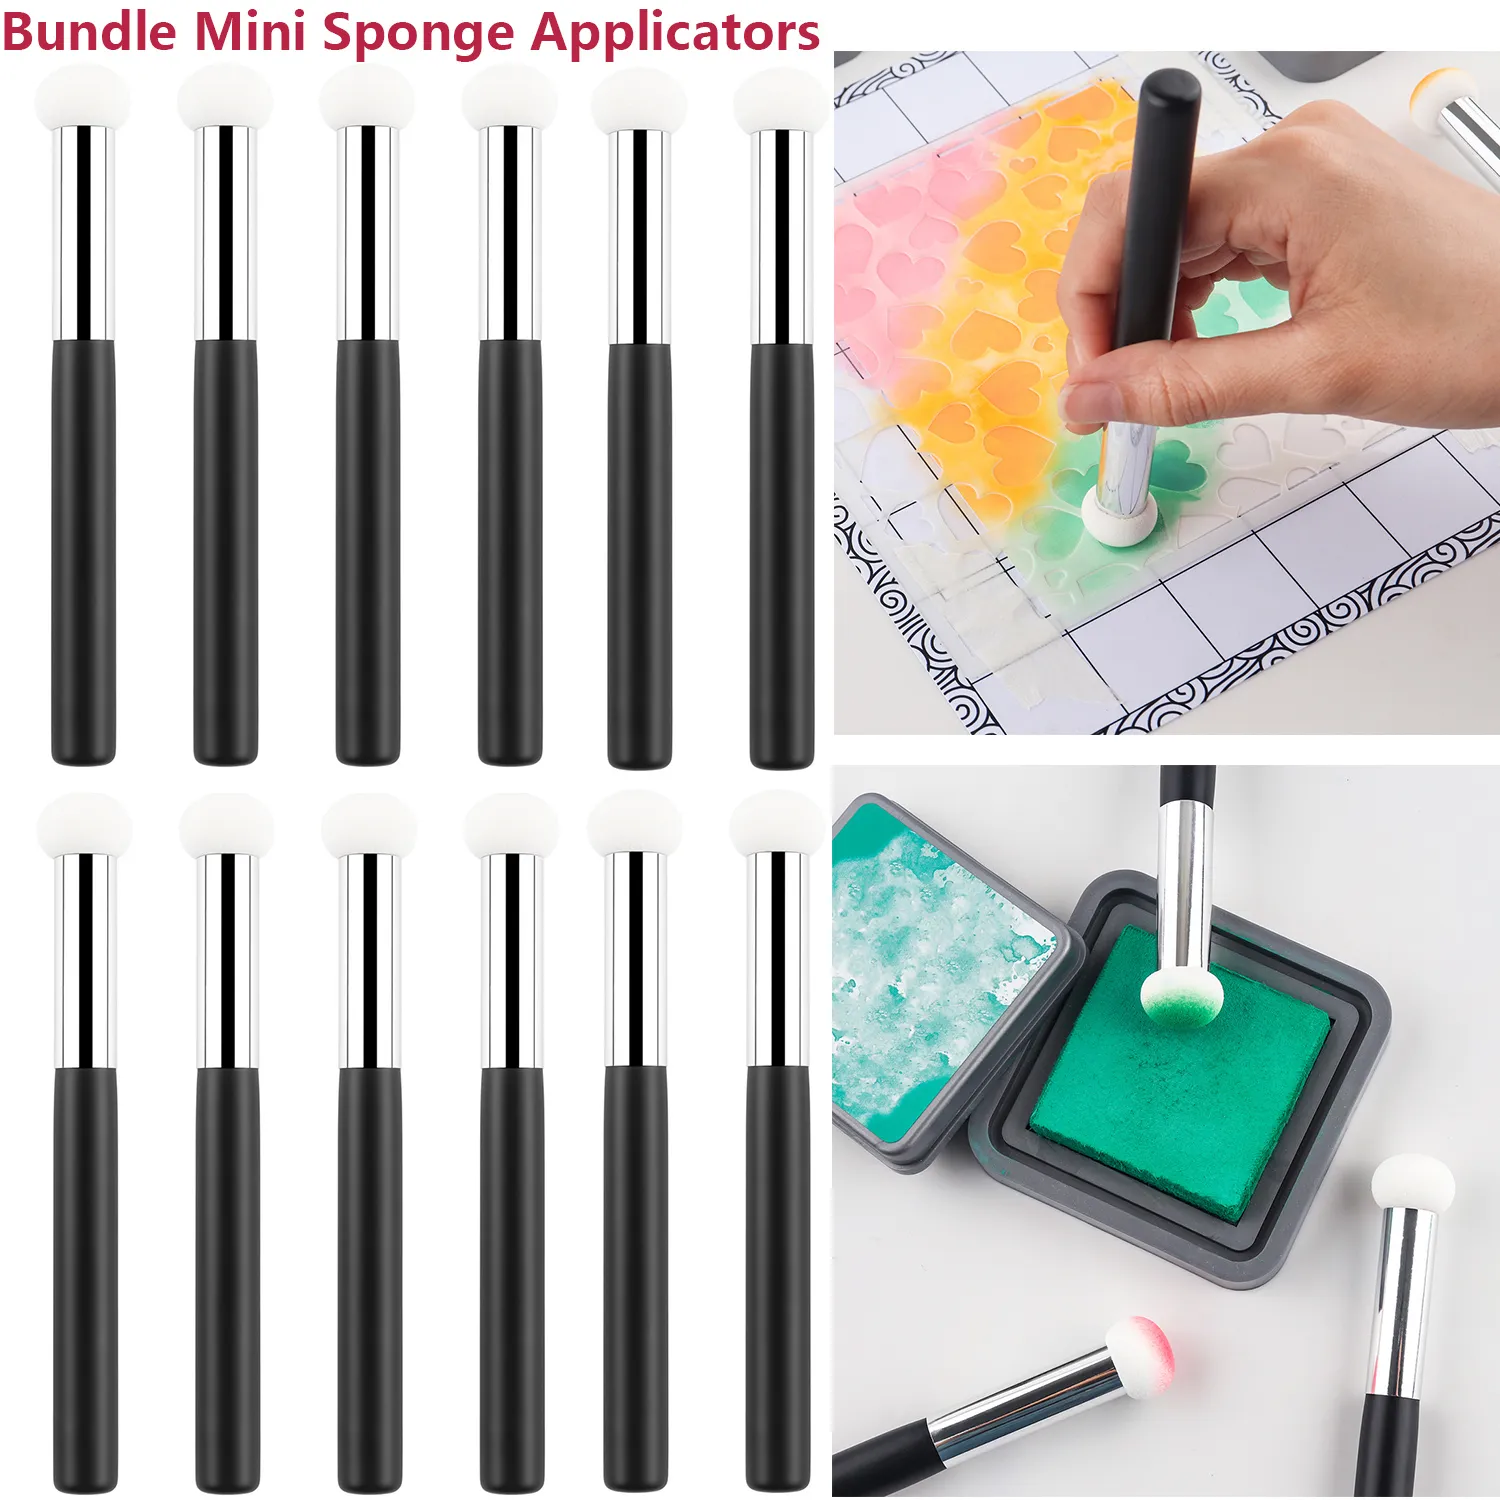 

8-24pcs Bundle Mini Splash Sponge Applicators For Scrapbook Paper Craft Intricate Illustrations Stencils Coloring Paper Pouncers